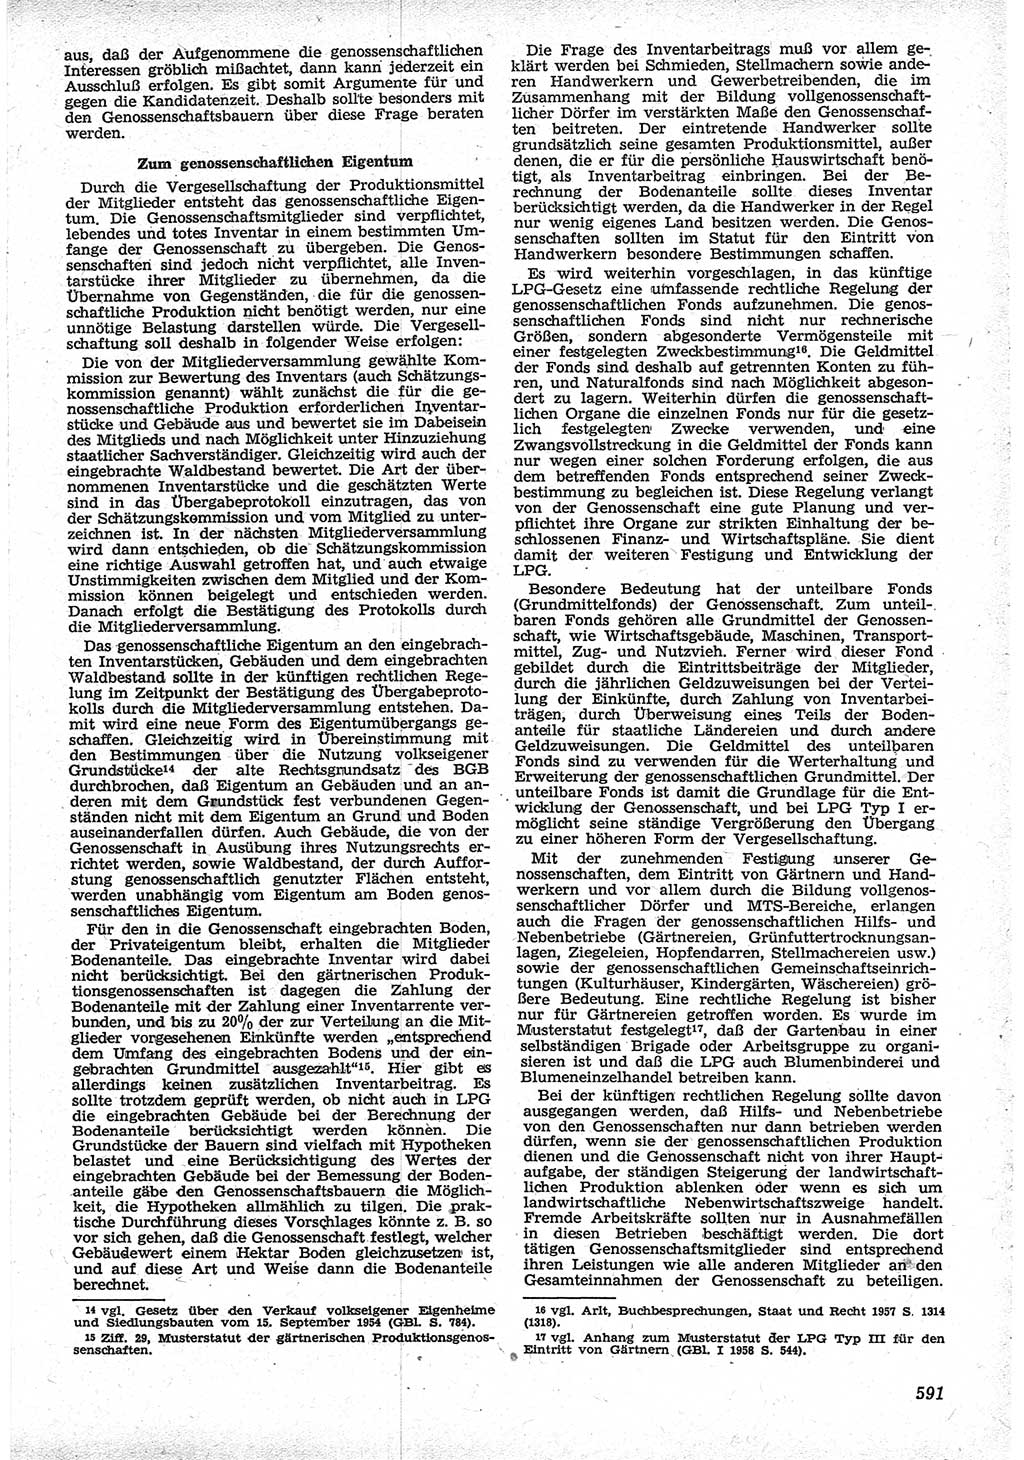 Neue Justiz (NJ), Zeitschrift für Recht und Rechtswissenschaft [Deutsche Demokratische Republik (DDR)], 12. Jahrgang 1958, Seite 591 (NJ DDR 1958, S. 591)